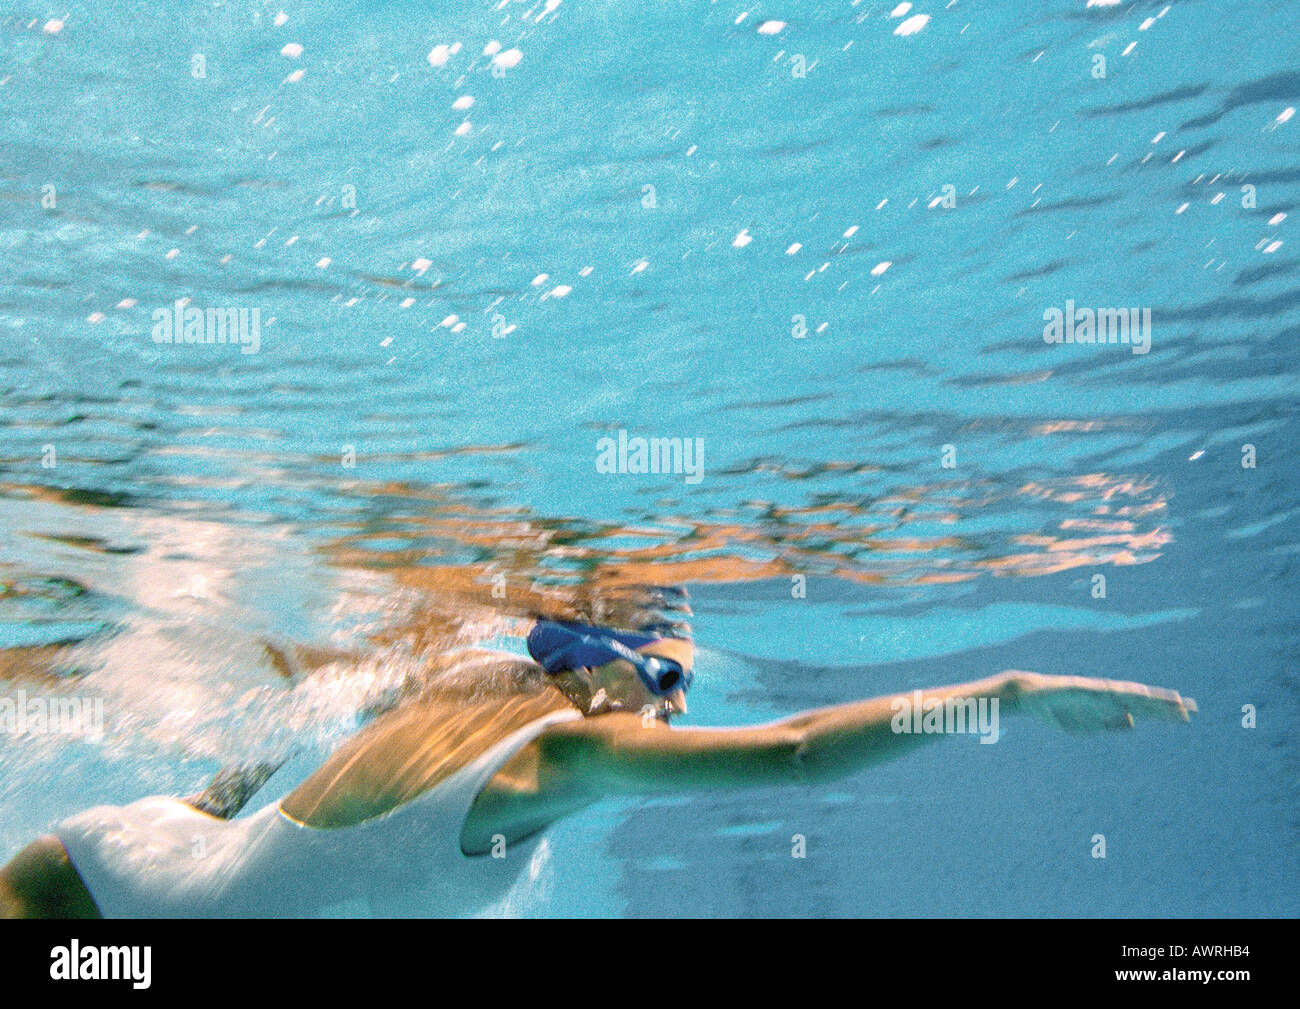 Woman swimming underwater, underwater view. Stock Photo